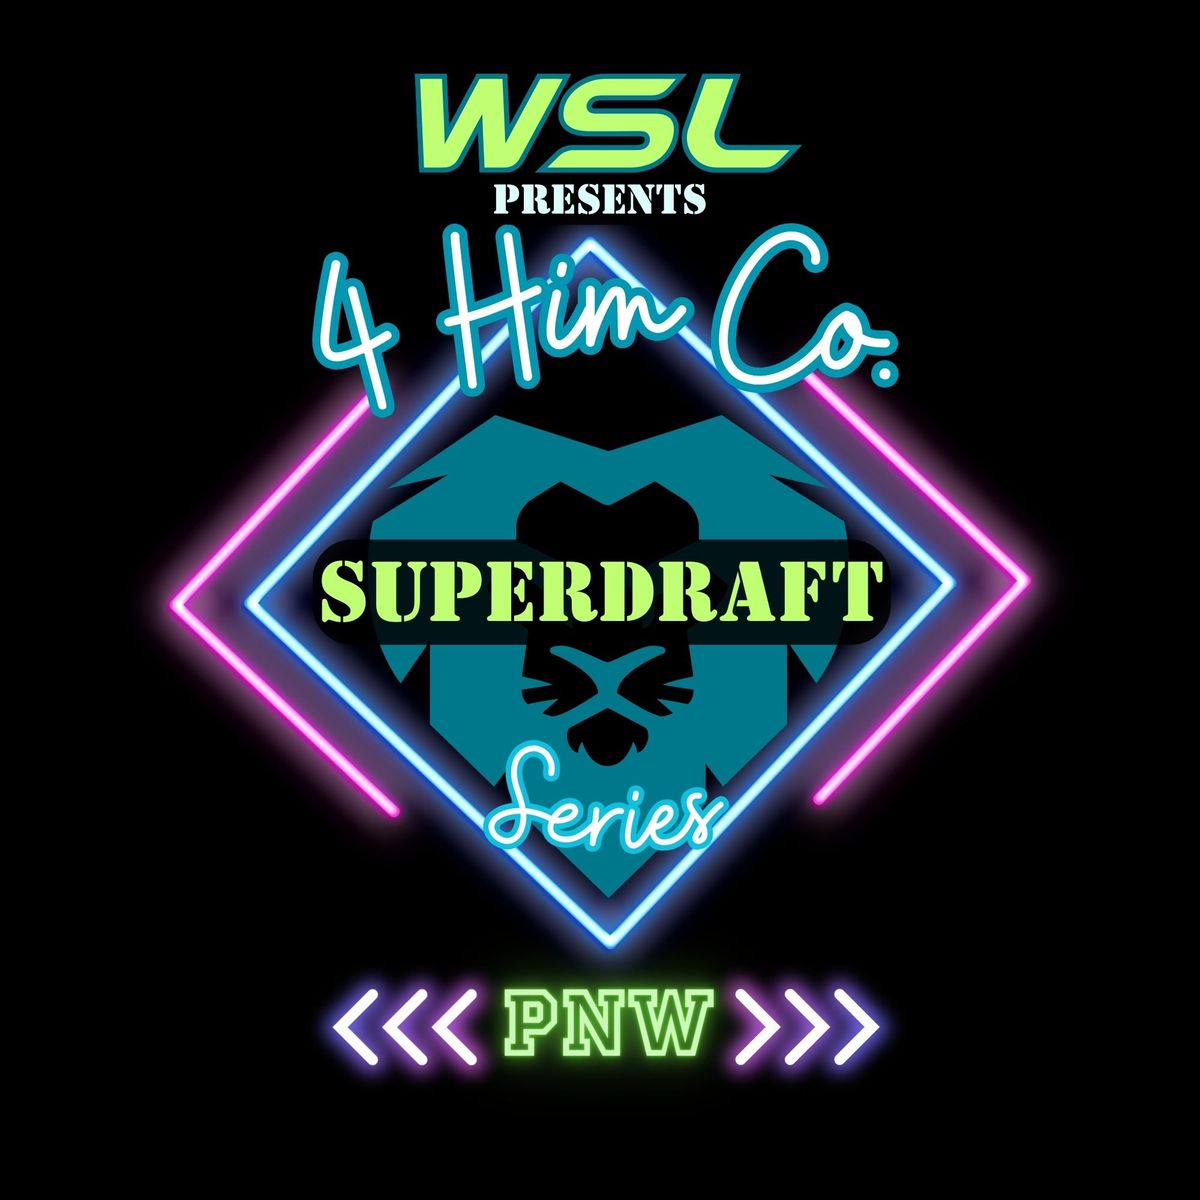 WSL\/ 4 him Co Superdraft Series PNW 